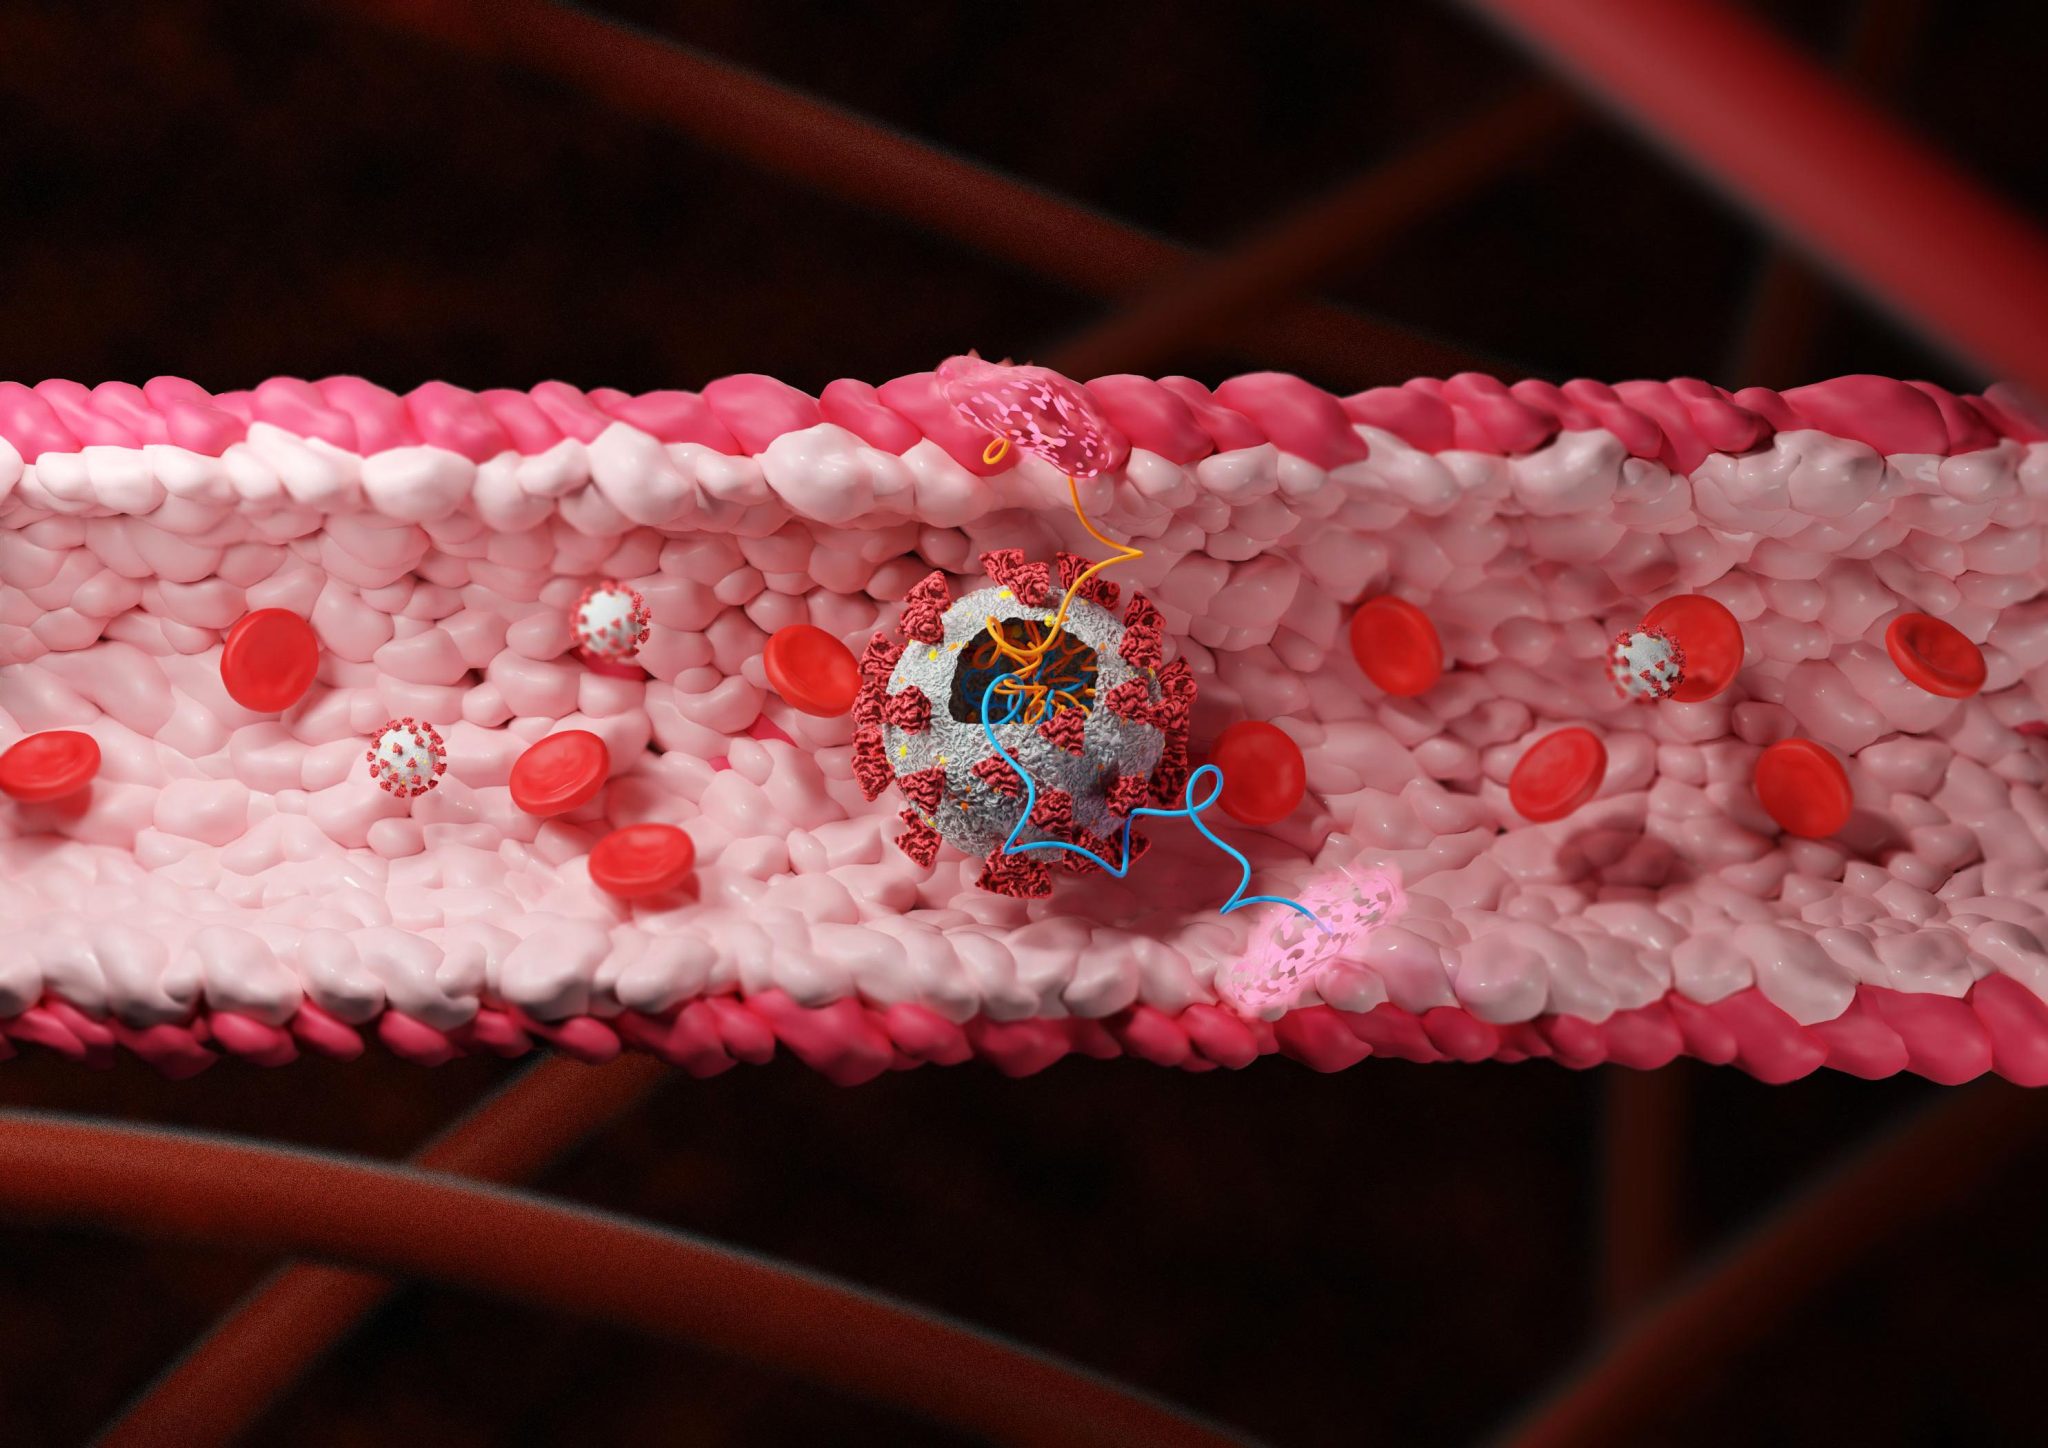 研究人员发现新冠病毒中能损害血管的蛋白质